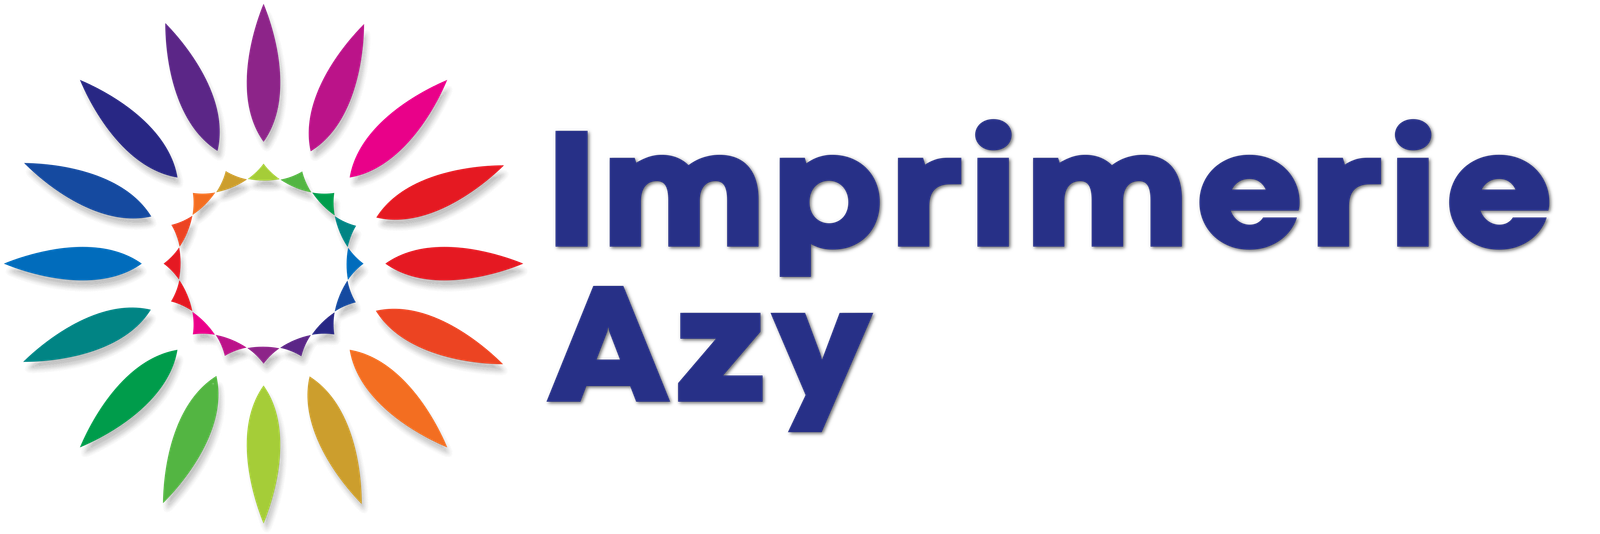 Imprimerie Azy - Imprimerie suisse familiale depuis 1970